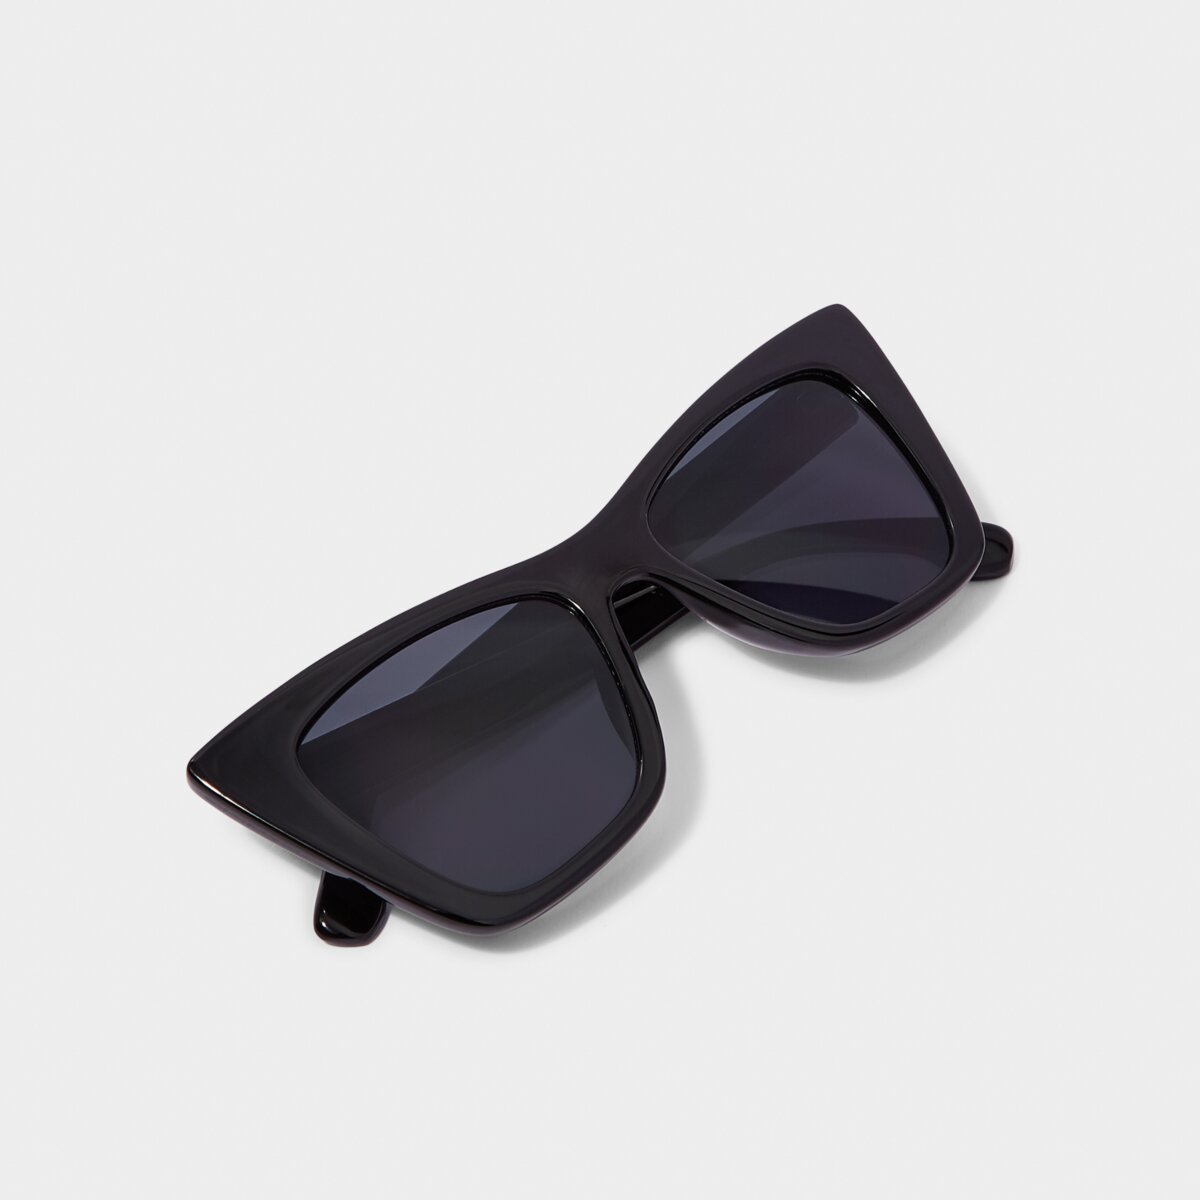 Porto Sunglasses - Brown Tortoiseshell